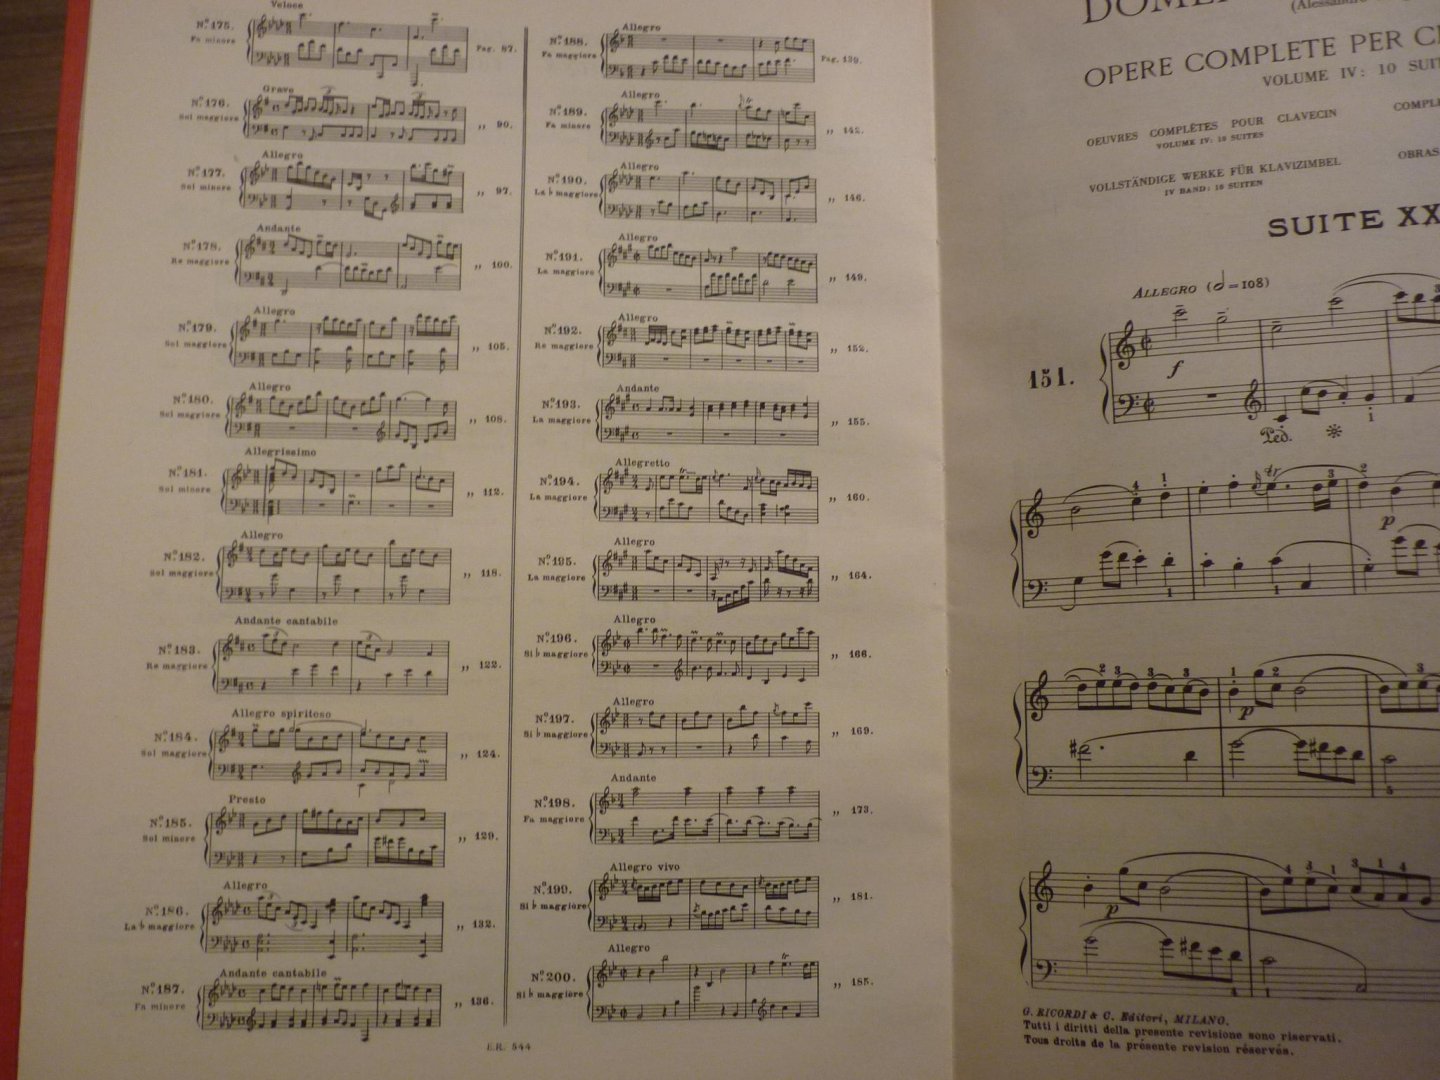 Scarlatti; Domenico (1685–1757) - Opere Complete Per Clav. Vol. 4; Suites No. 151 - 200; Voor Klavecimbel (of piano); Editor: Alessandro Longo